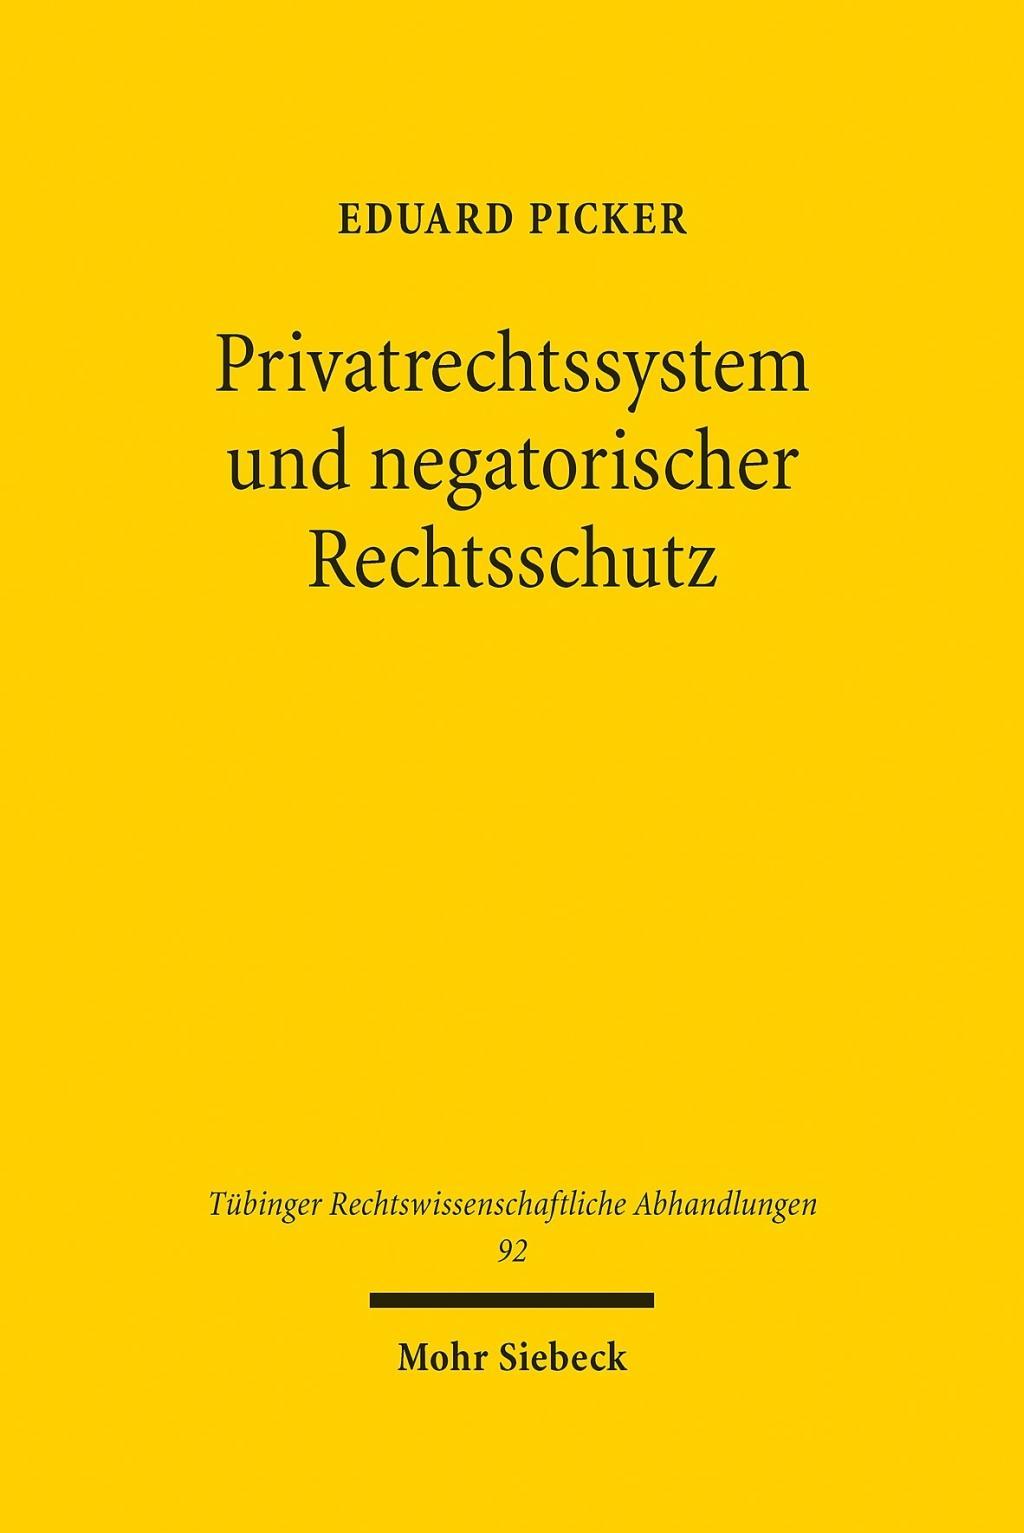 Kniha Privatrechtssystem und negatorischer Rechtsschutz Eduard Picker